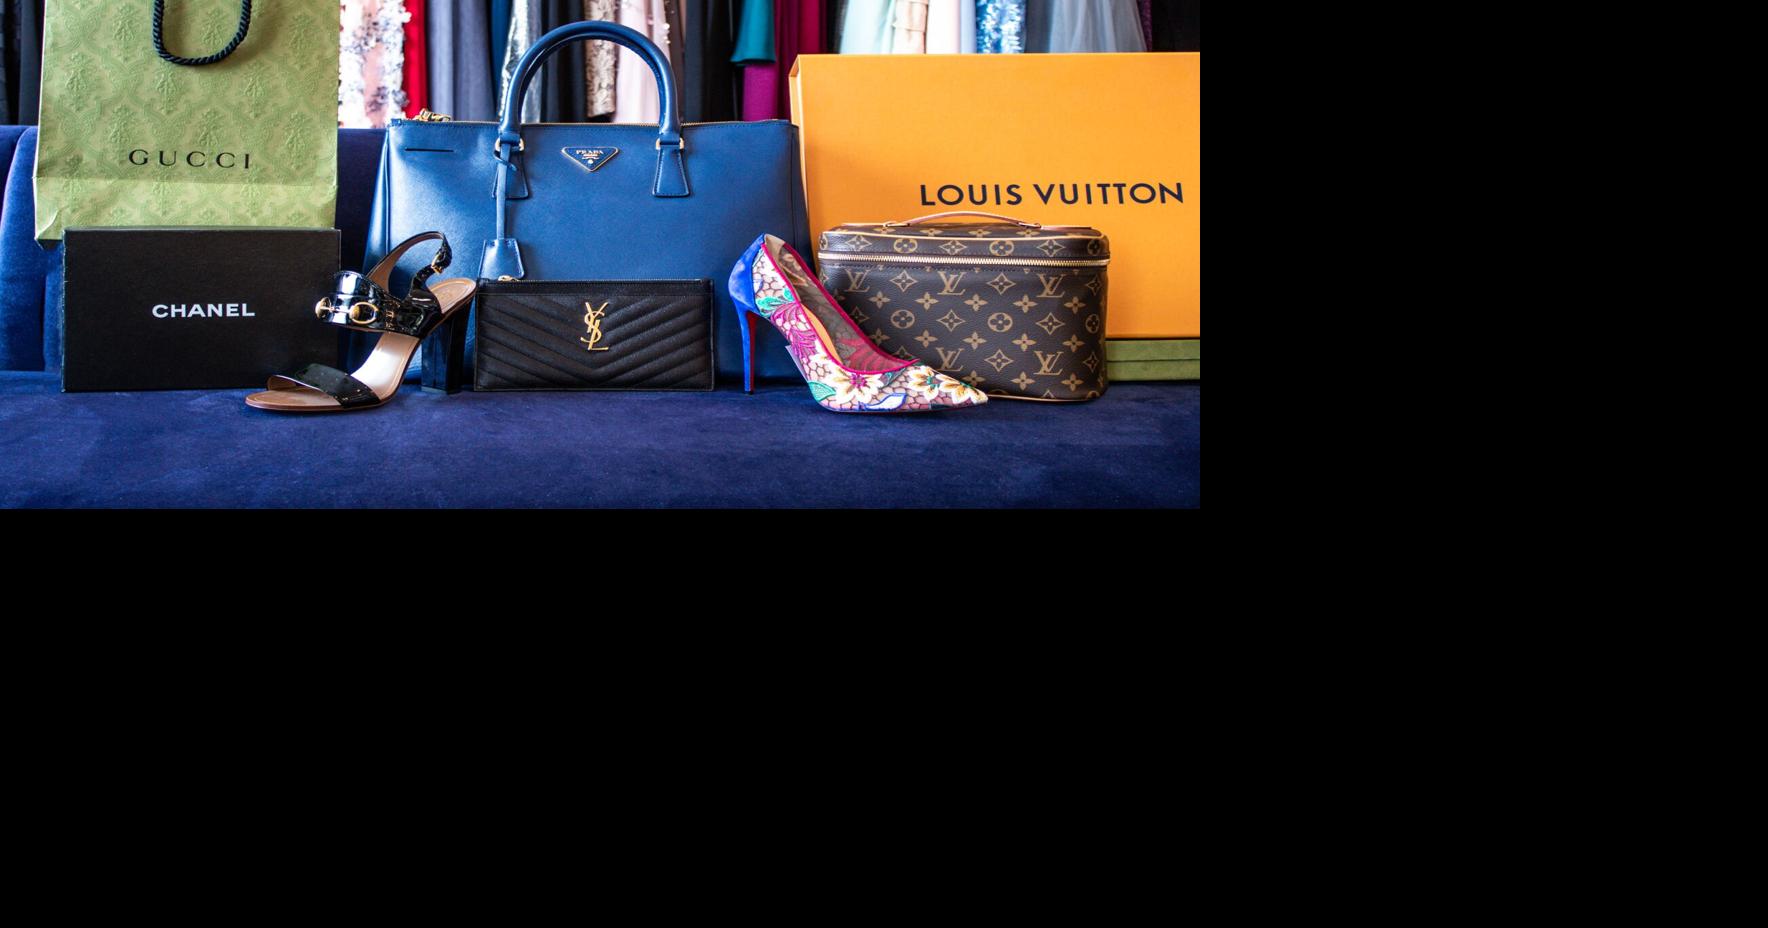 LV Louis Vuitton suit - 121 Brand Shop